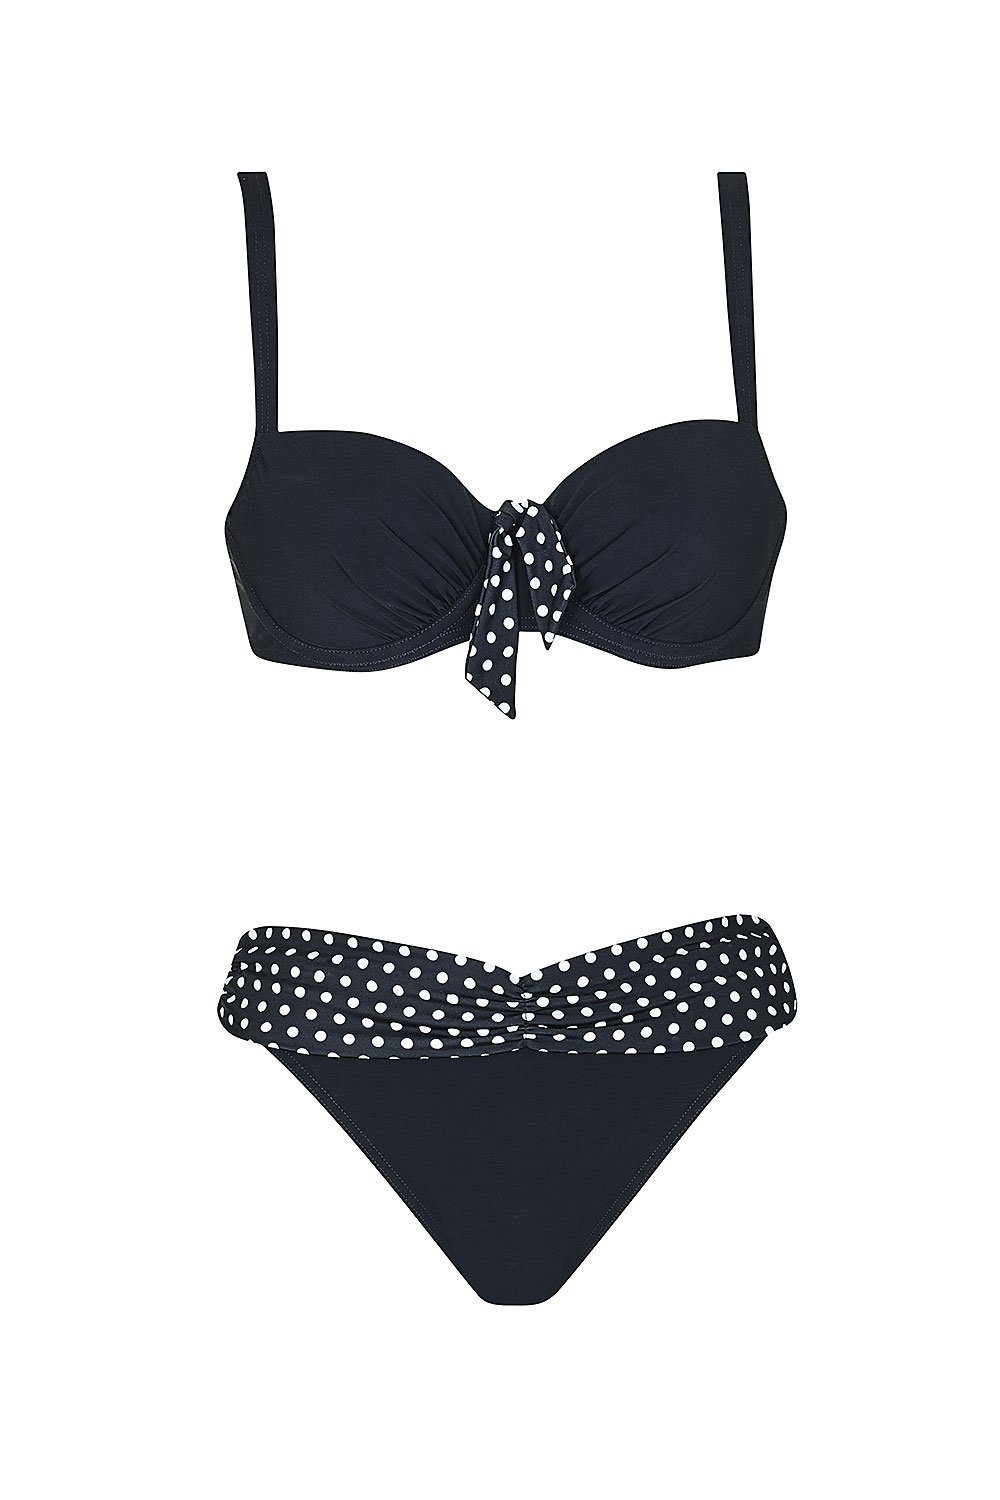 Sunflair Bügel-Bikini Happy mit mit Bikini NOS 50+ Happy Black Black (2-St) UV-Schutz und Softschale Formbügel